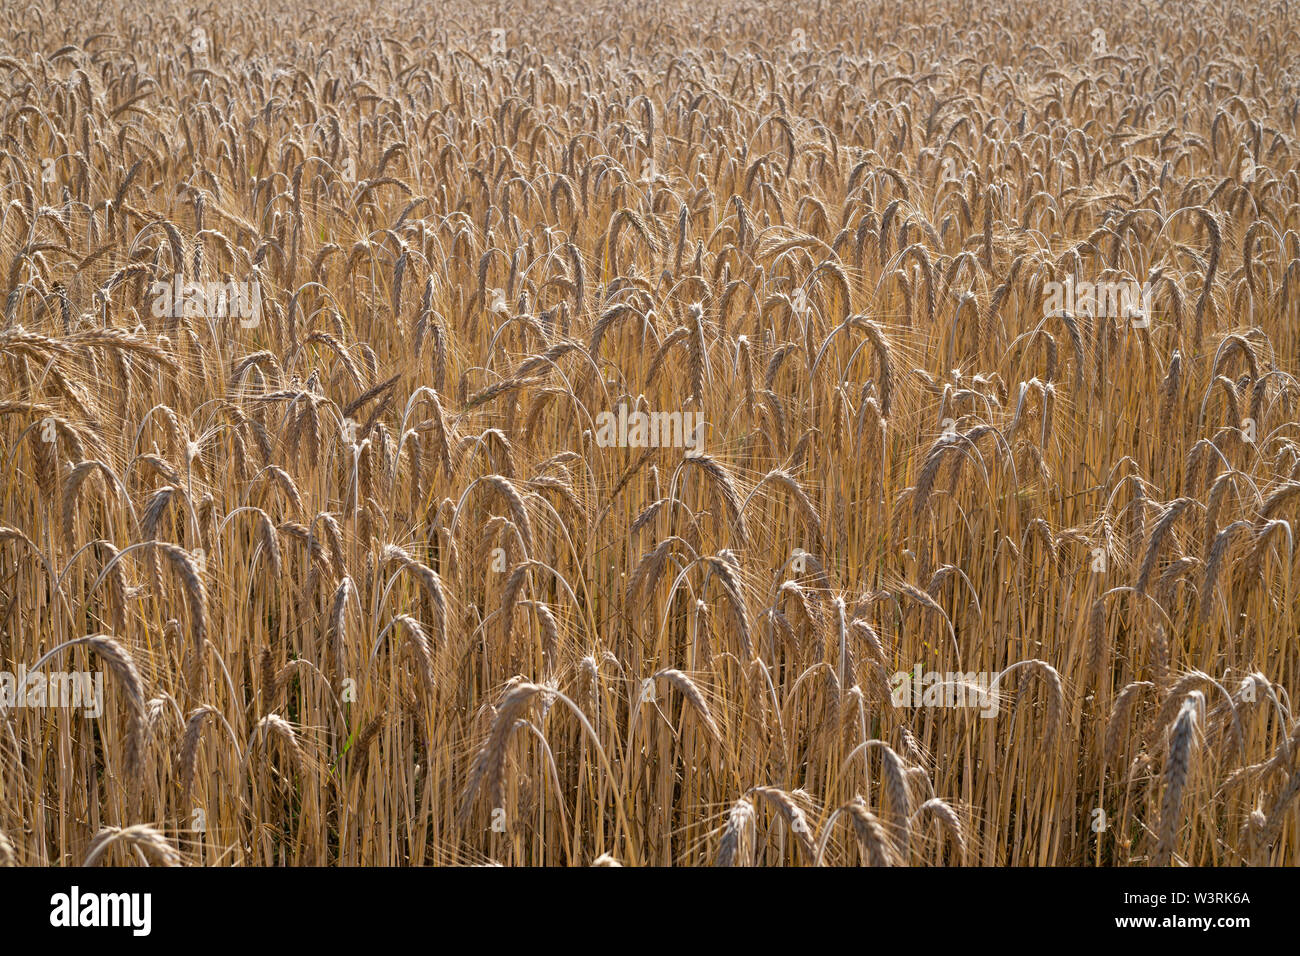 Champ de blé. Les épis de blé d'or sur le terrain. Contexte de la maturation des épis de blé meadow field Banque D'Images